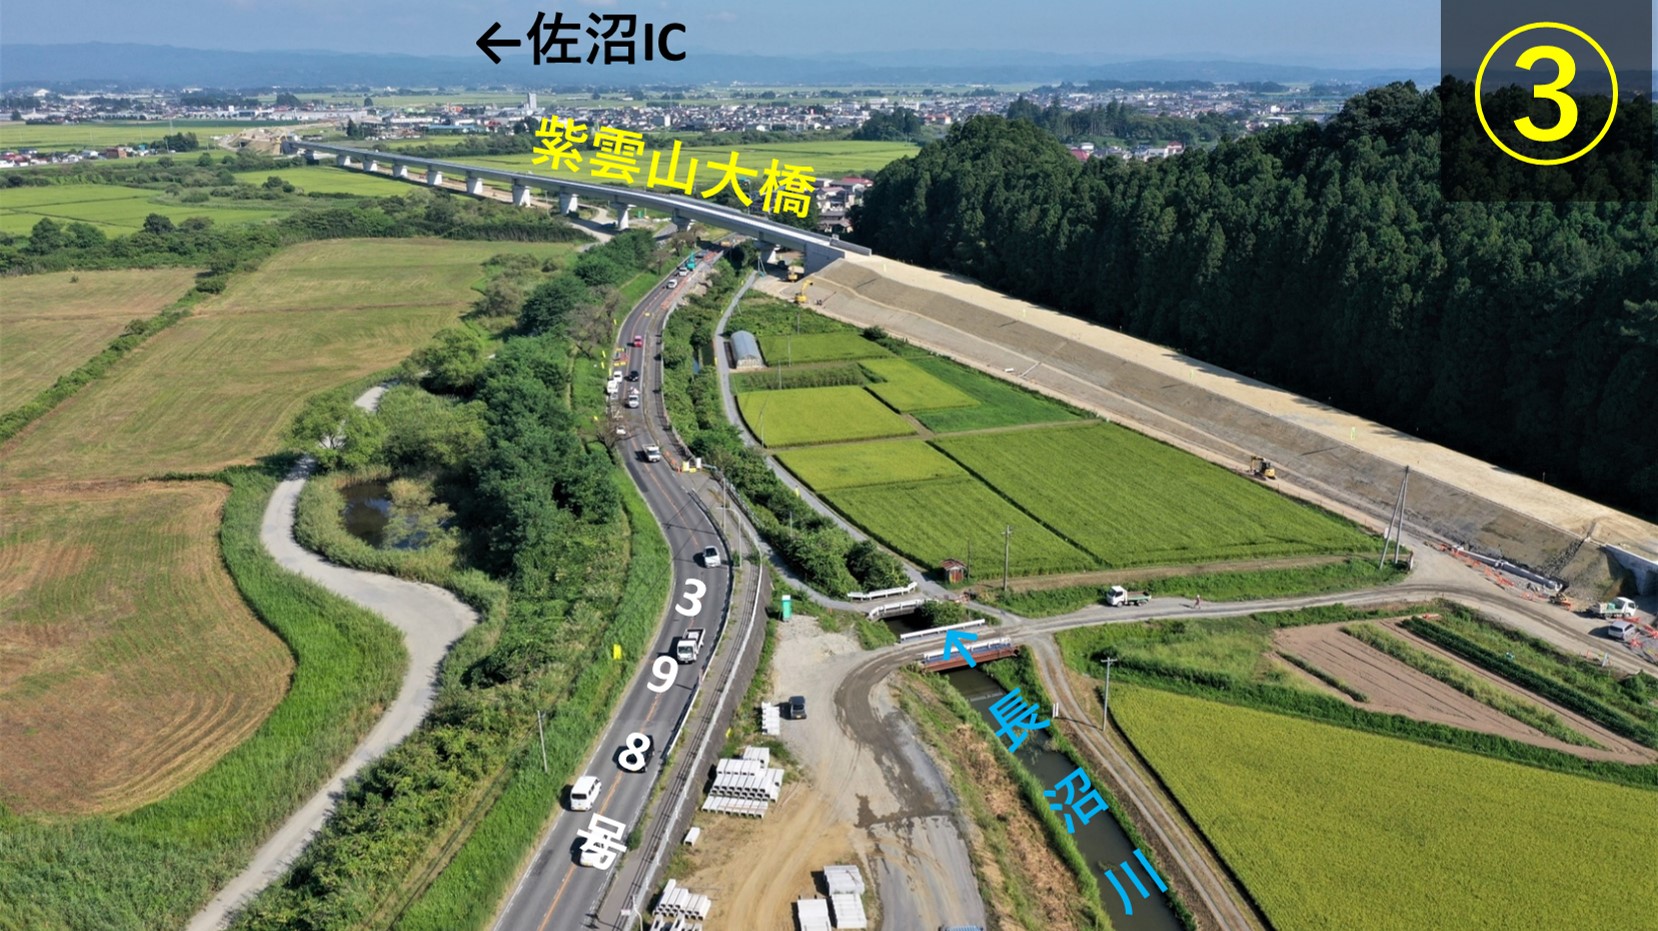 みやぎ県北幹線道路の進捗状況